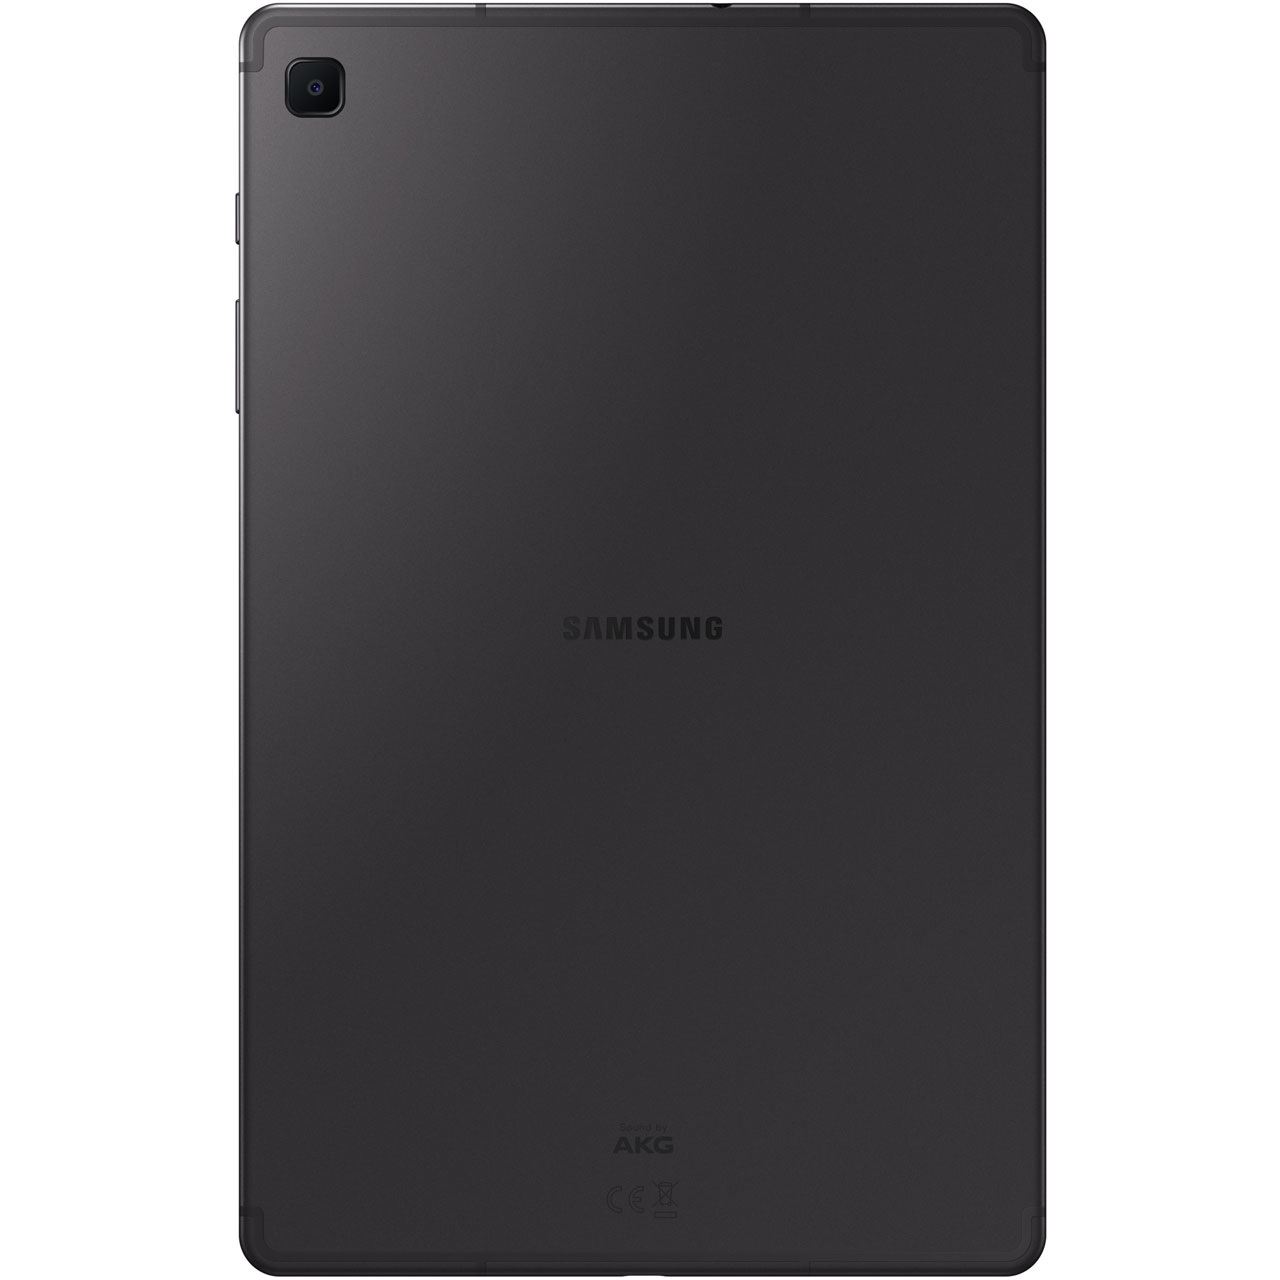 Samsung Galaxy Tab S6 Lite P615 64GB 10,4" WIFI+Cellular grey hervorragend